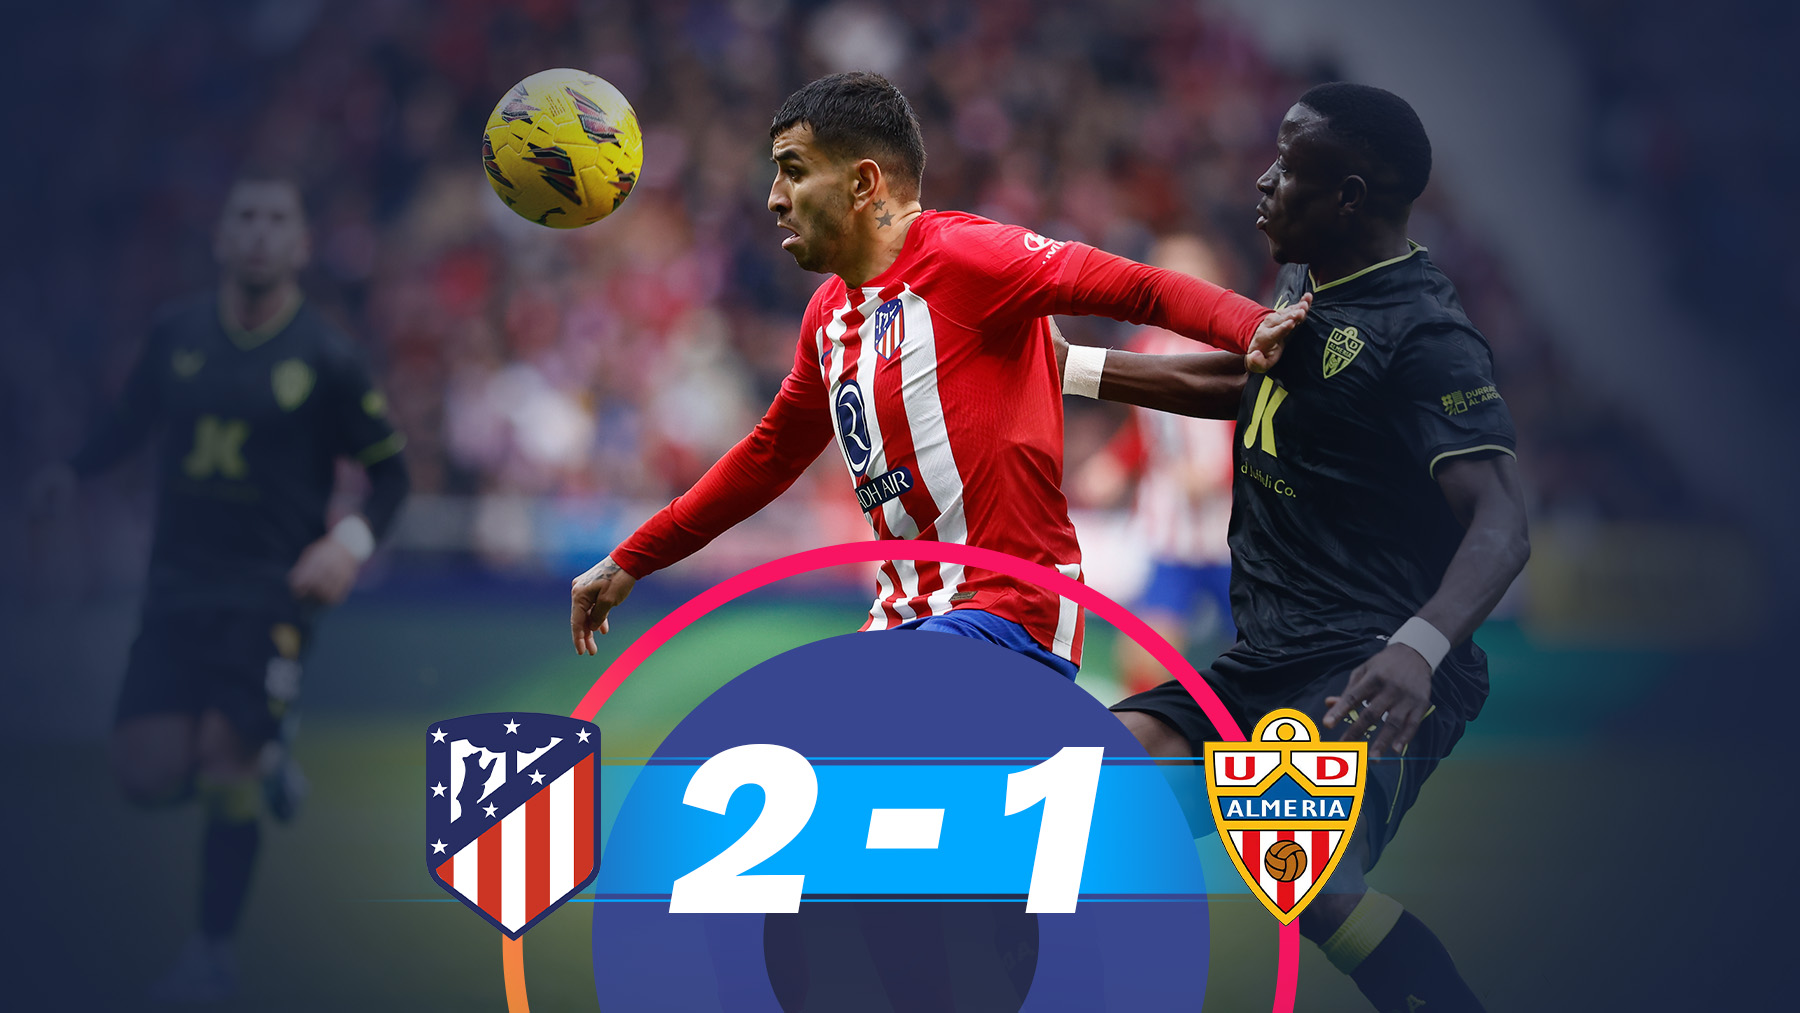 Almería vs. Atlético de Madrid, por La Liga: resultado, goleadores